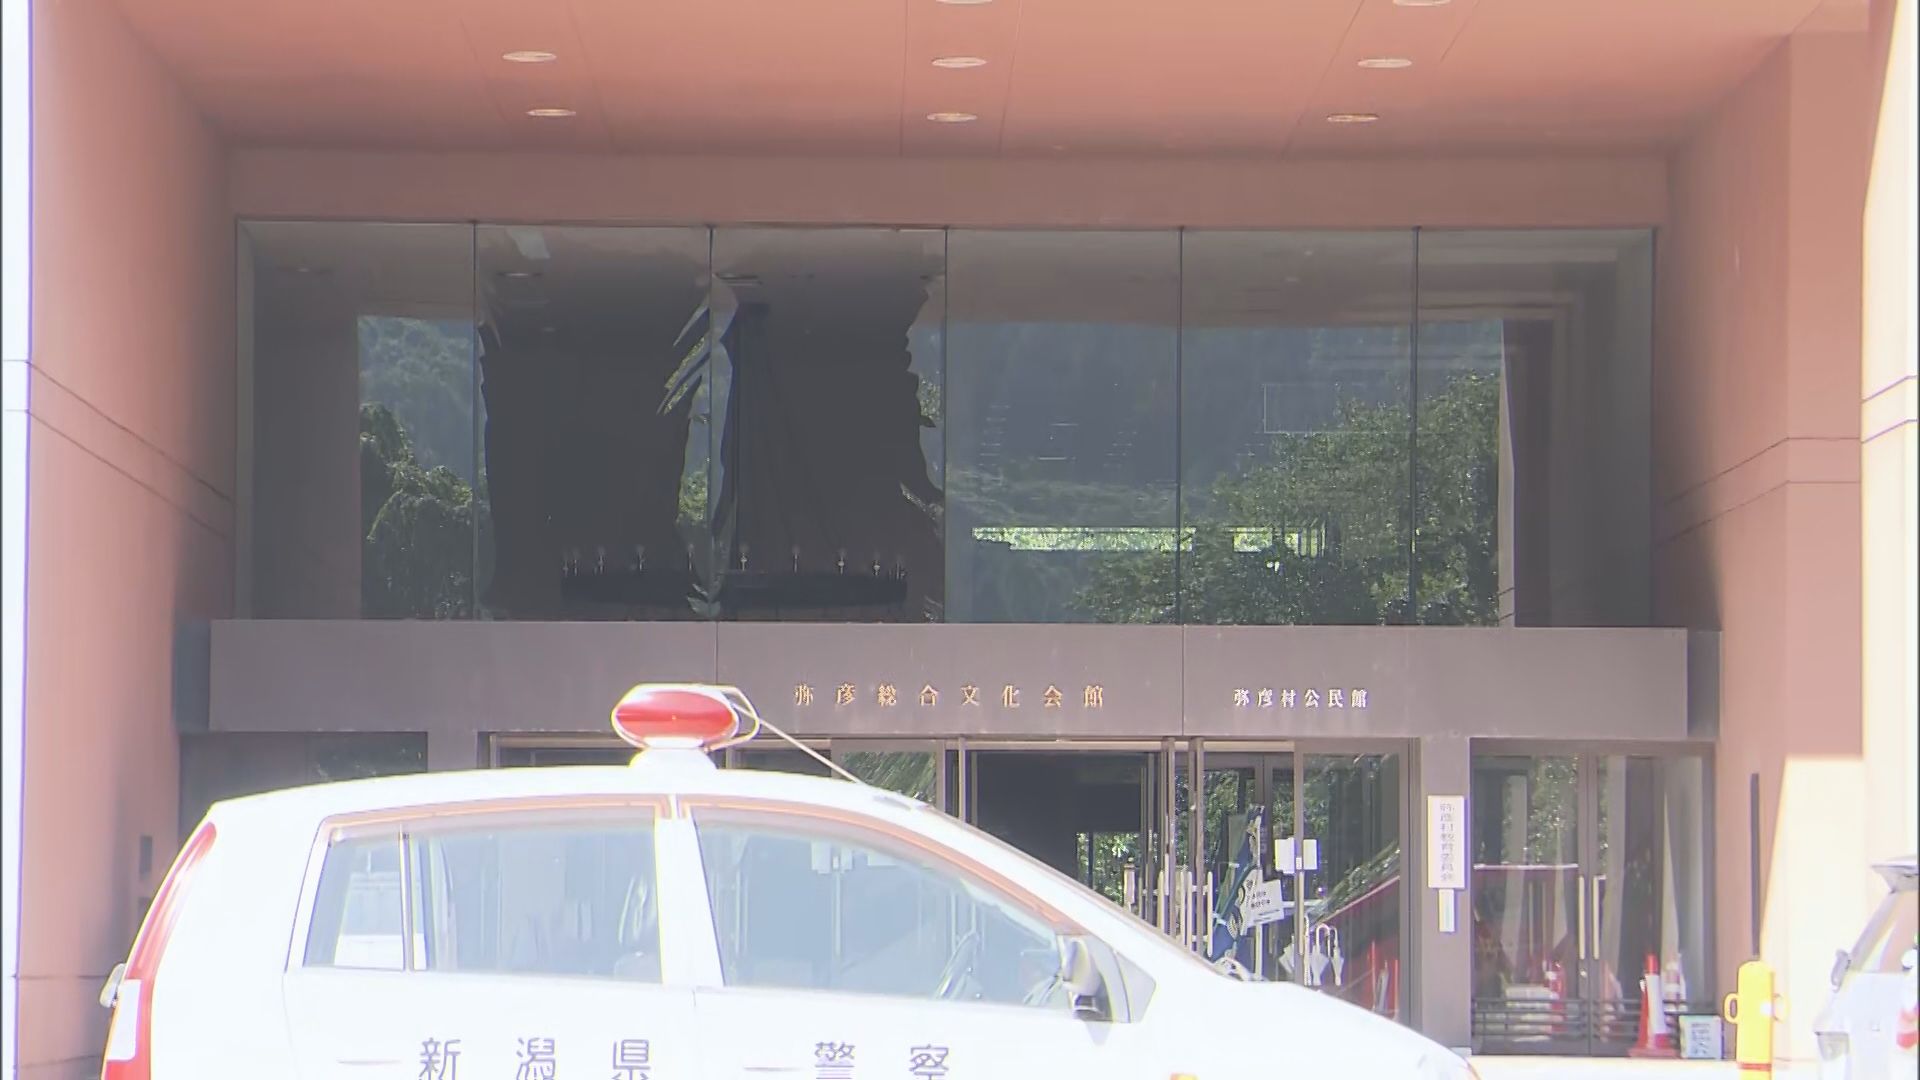 【速報】弥彦総合文化会館で爆発事故 工事関係者1人死亡、1人重傷、2人軽傷【新潟】